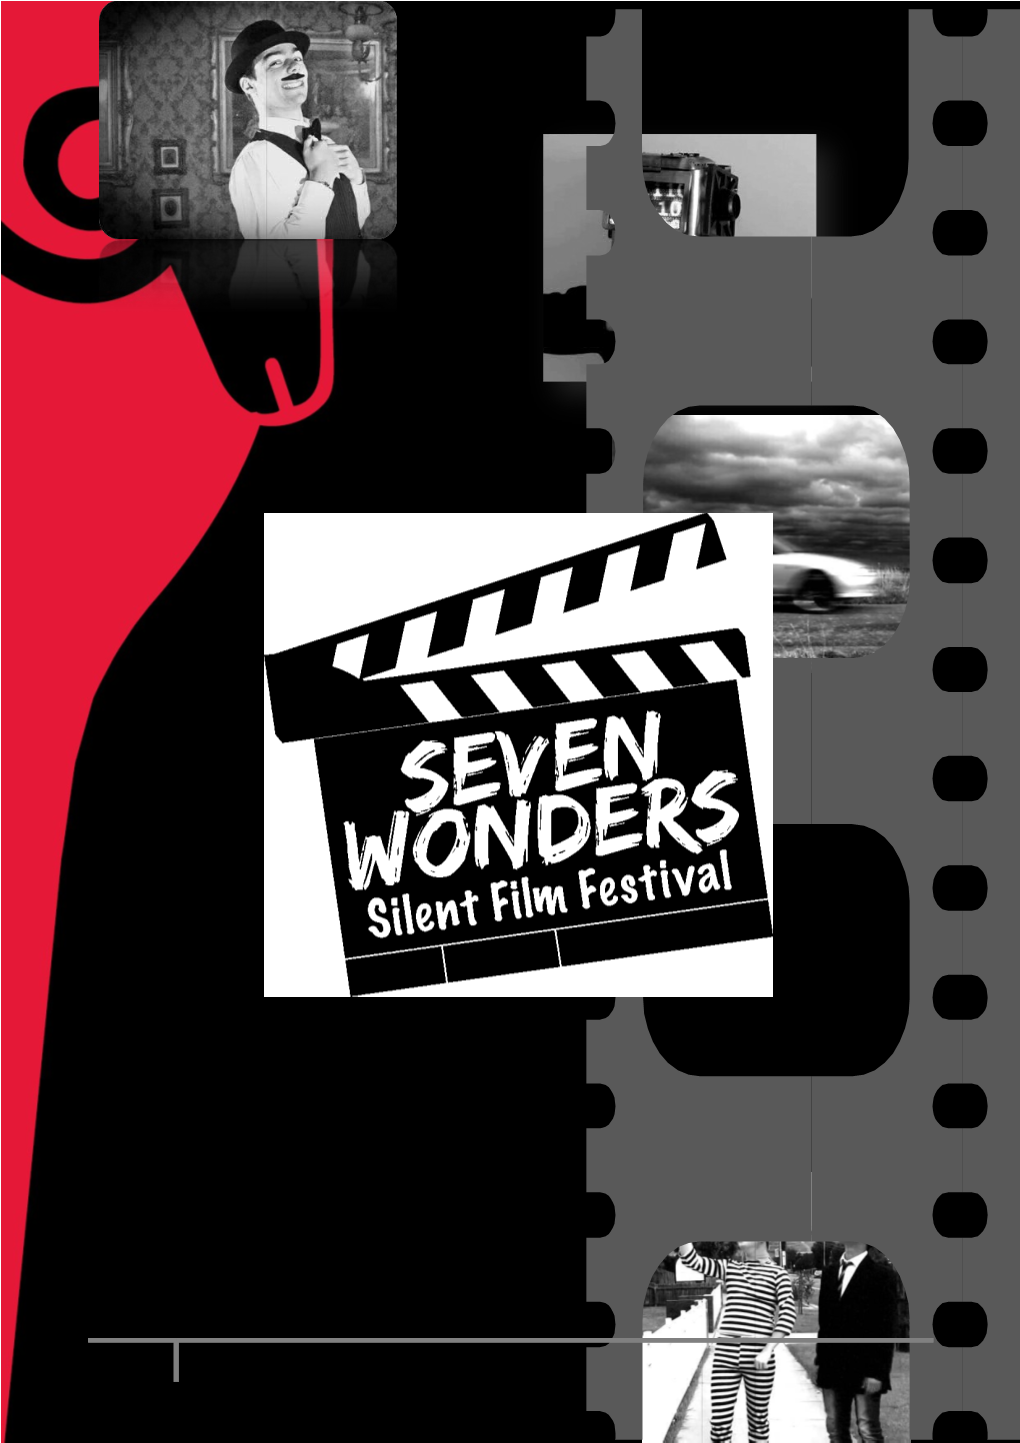 Seven Wonders Silent Film Festival